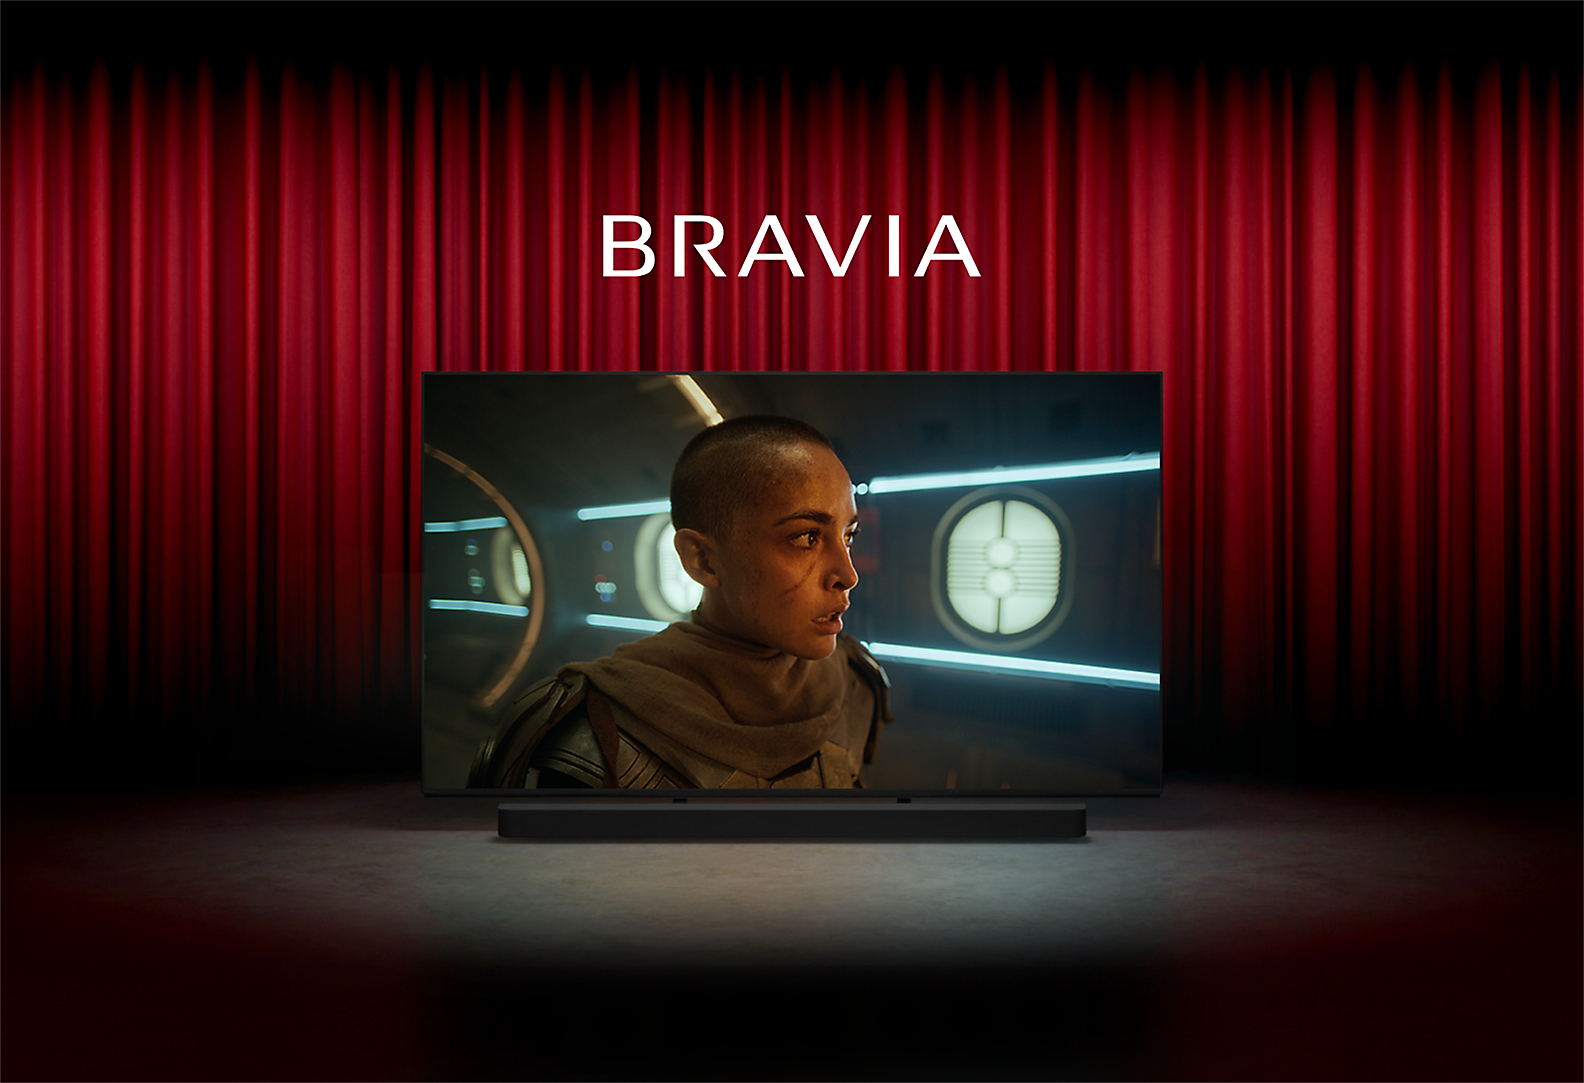 Bild eines Kinos mit roten Vorhängen und Sony TV mitten auf der Bühne; auf dem Bildschirm ist eine Person in einem Science-Fiction-Film zu sehen, das Wort BRAVIA darüber und eine Soundbar von Sony darunter